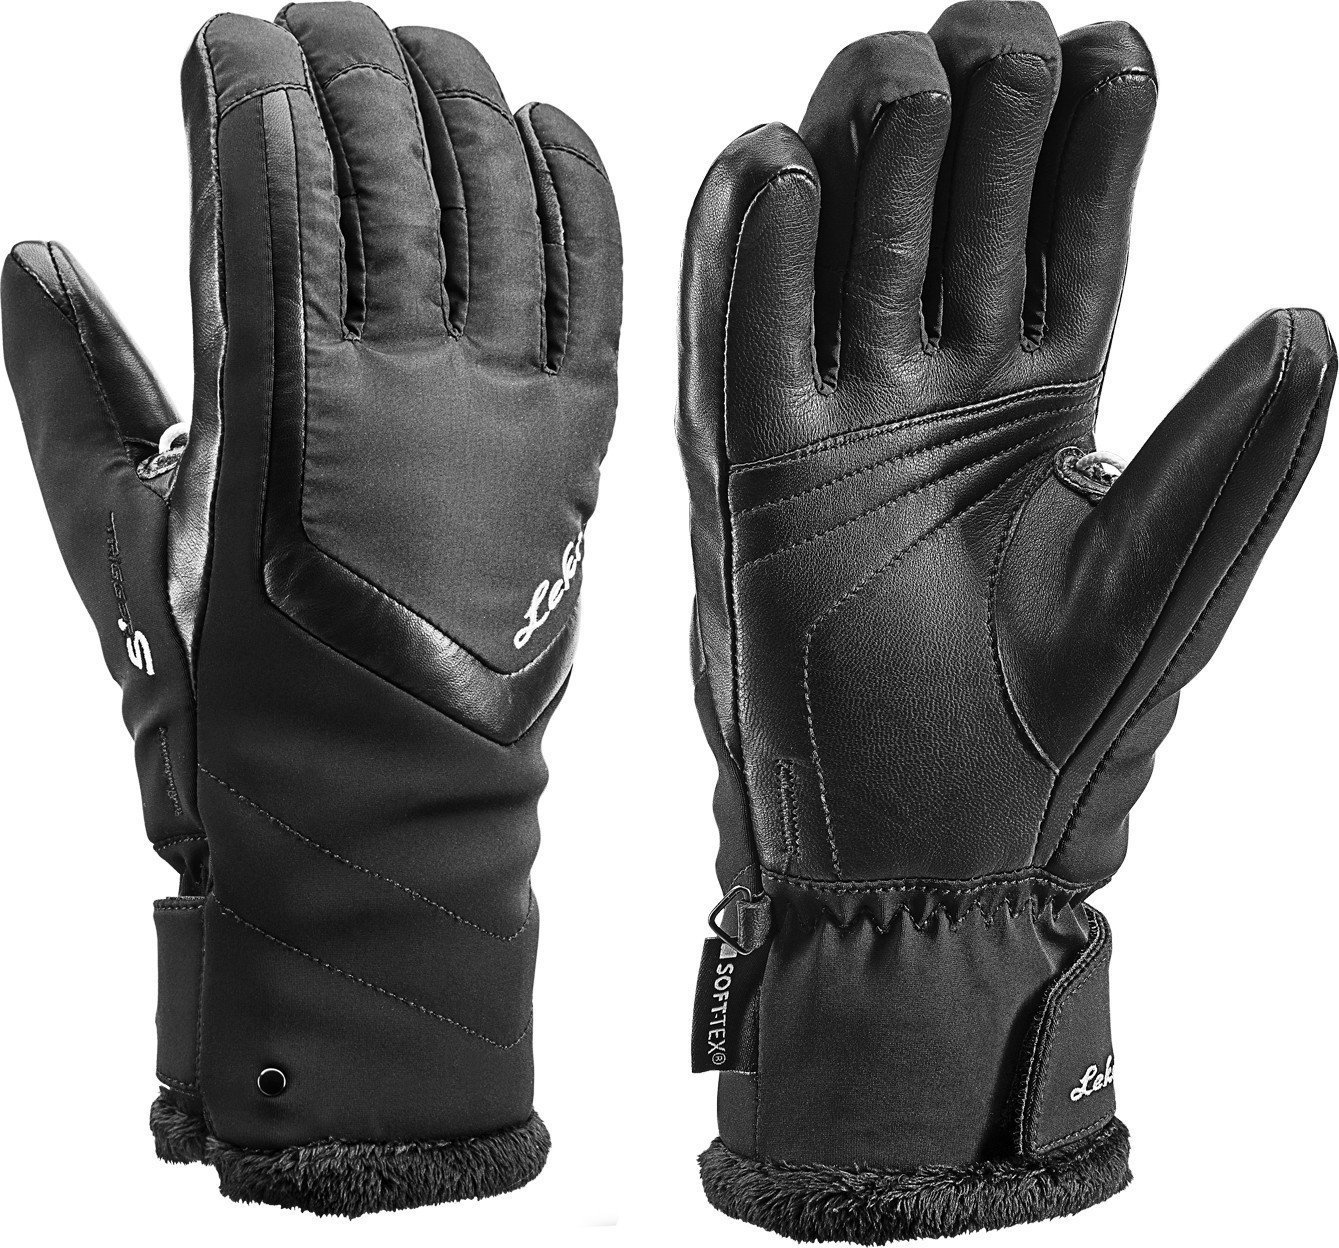 Smučarske rokavice Leki Stella S Black 7,5 Smučarske rokavice